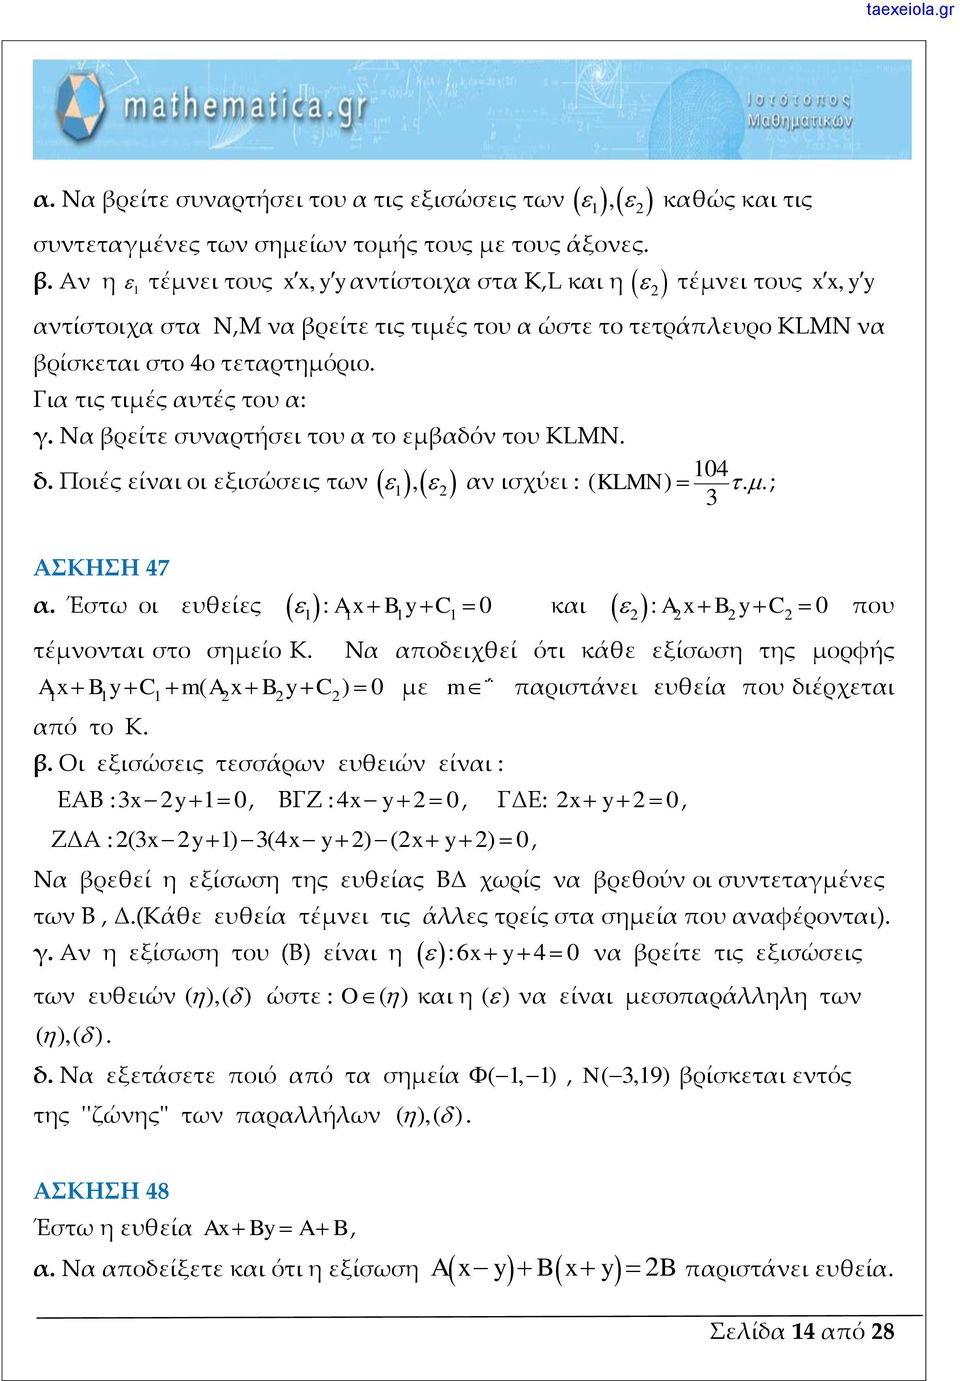 οι εξισώσεις των 1, αν ισχύει : ( KLMN) ; 3 ΑΣΚΗΣΗ 47 α Έστω οι ευθείες : A x B y C 0 και τέμνονται στο σημείο Κ 1 1 1 1 1 1 1 : A x B y C 0 που Να αποδειχθεί ότι κάθε εξίσωση της μορφής A x B y C m(